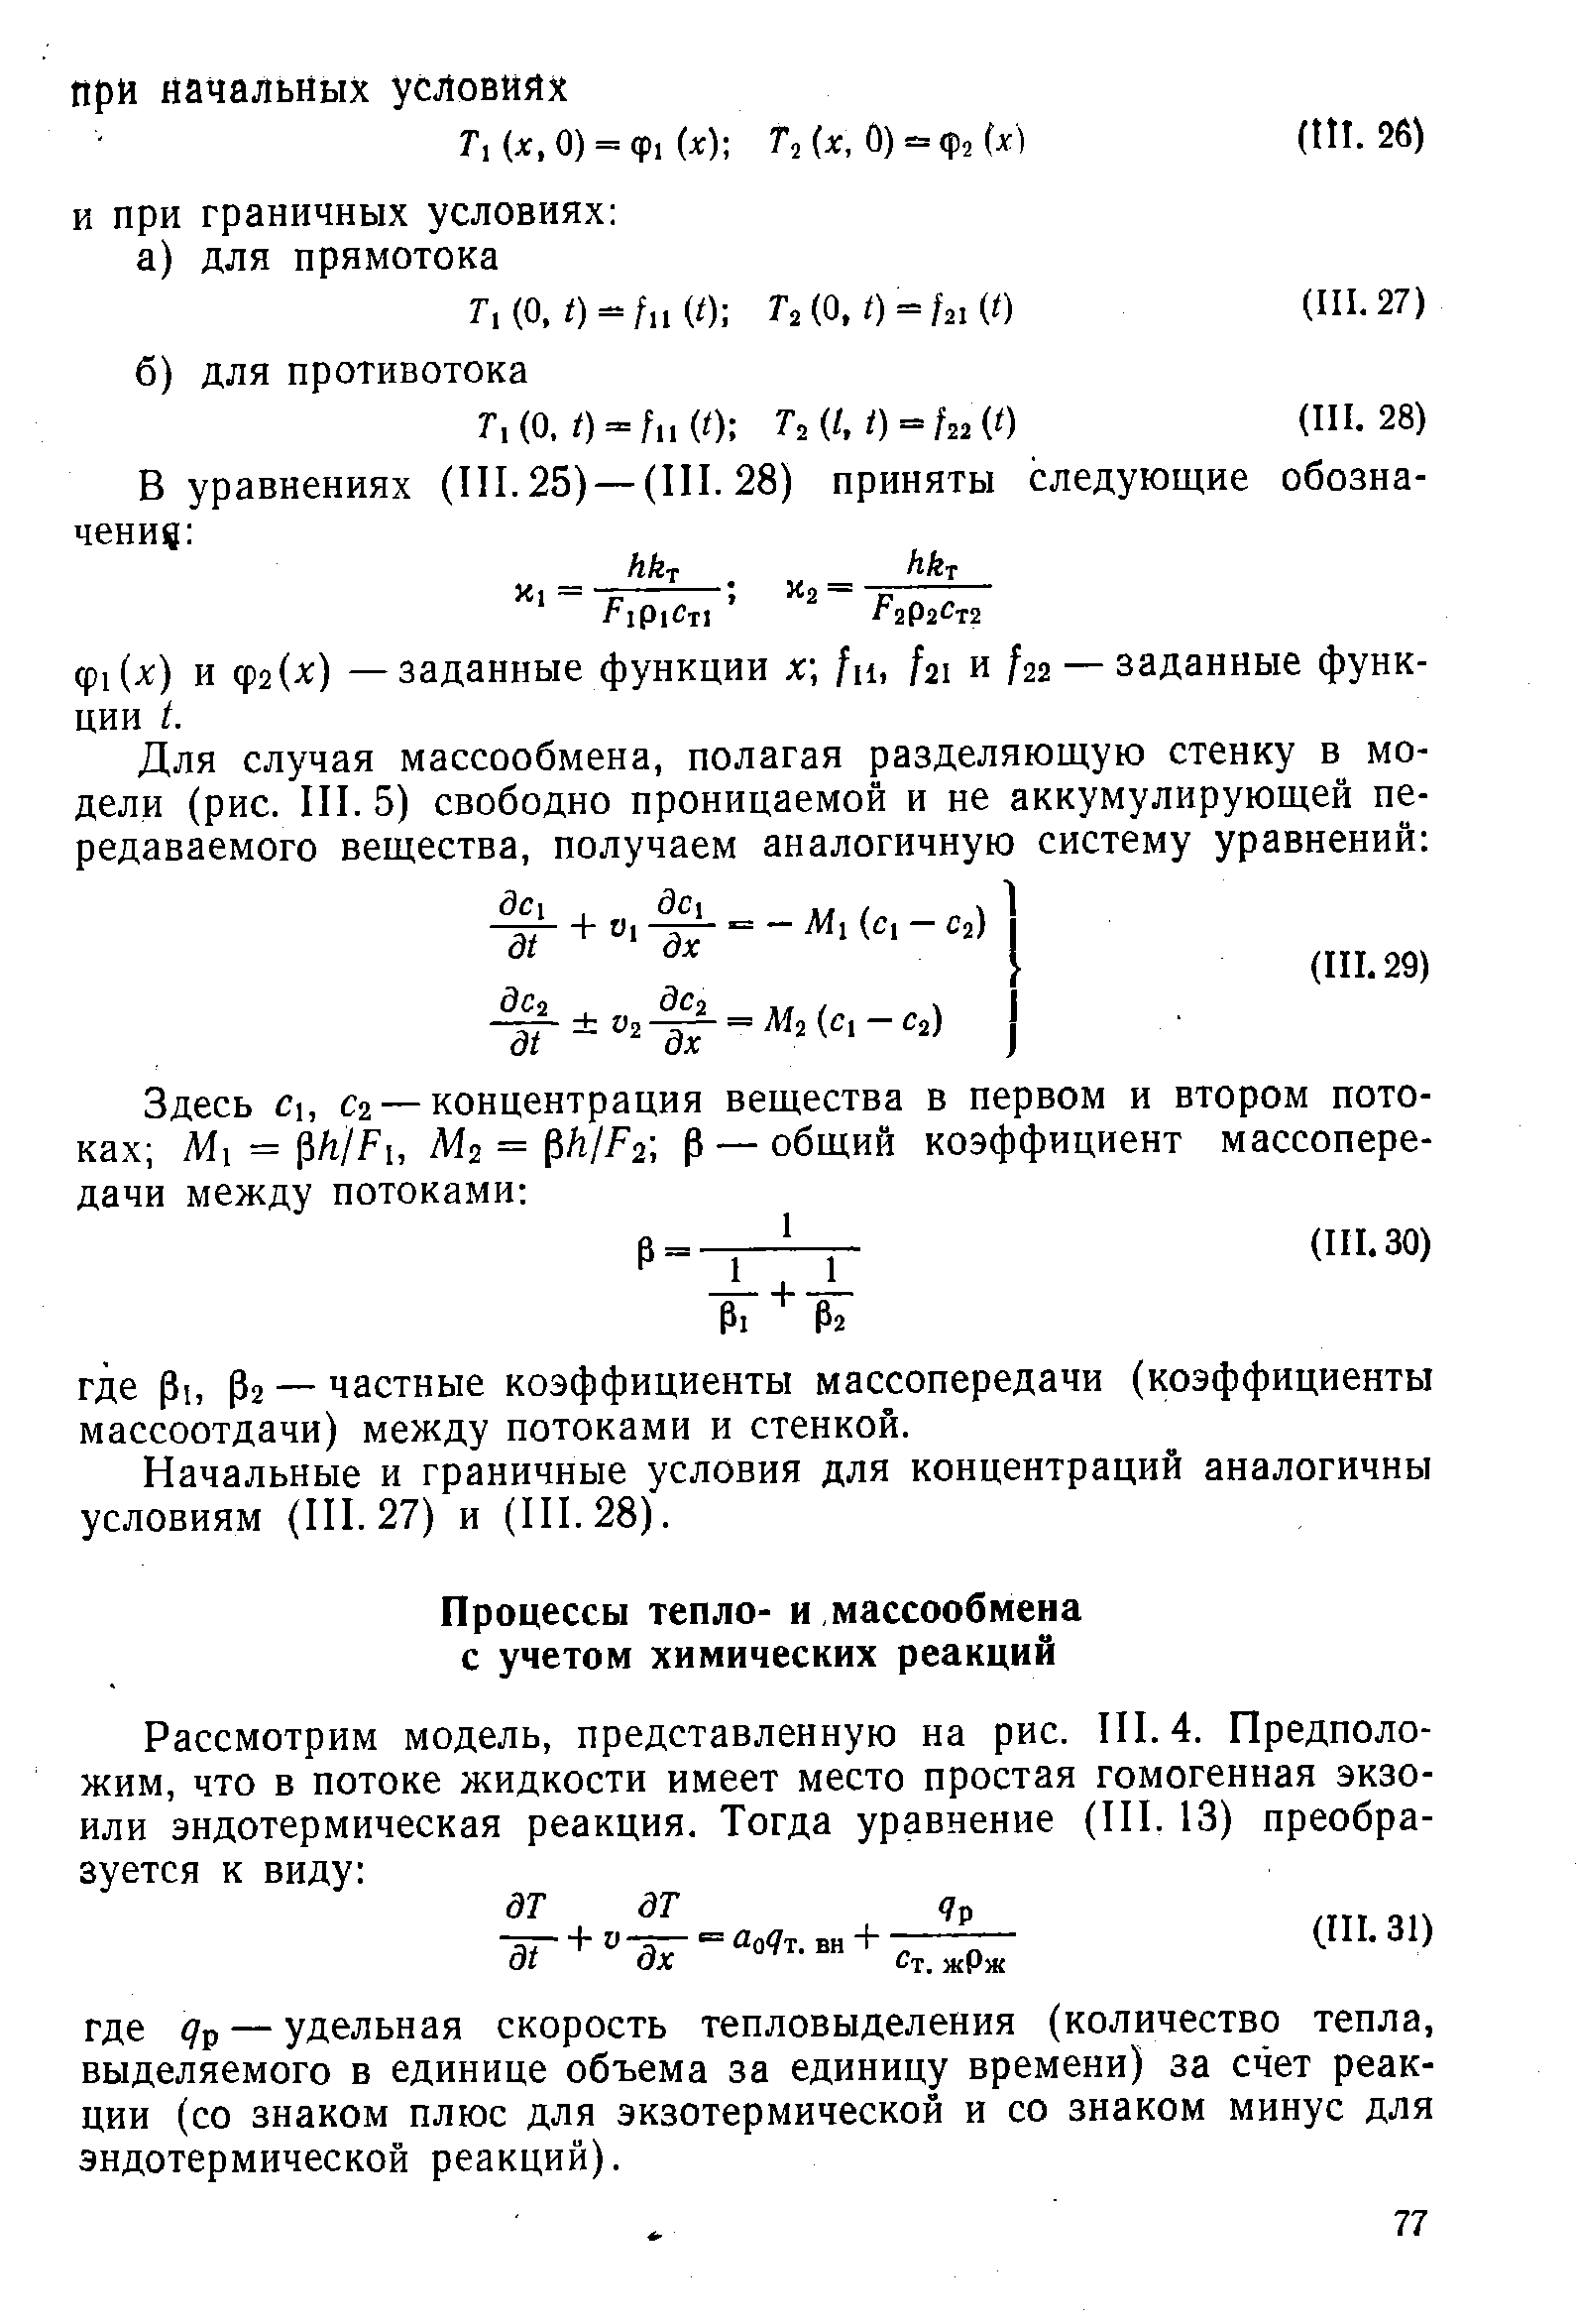 Начальные и граничные условия для концентраций аналогичны условиям (III. 27) и (III. 28).